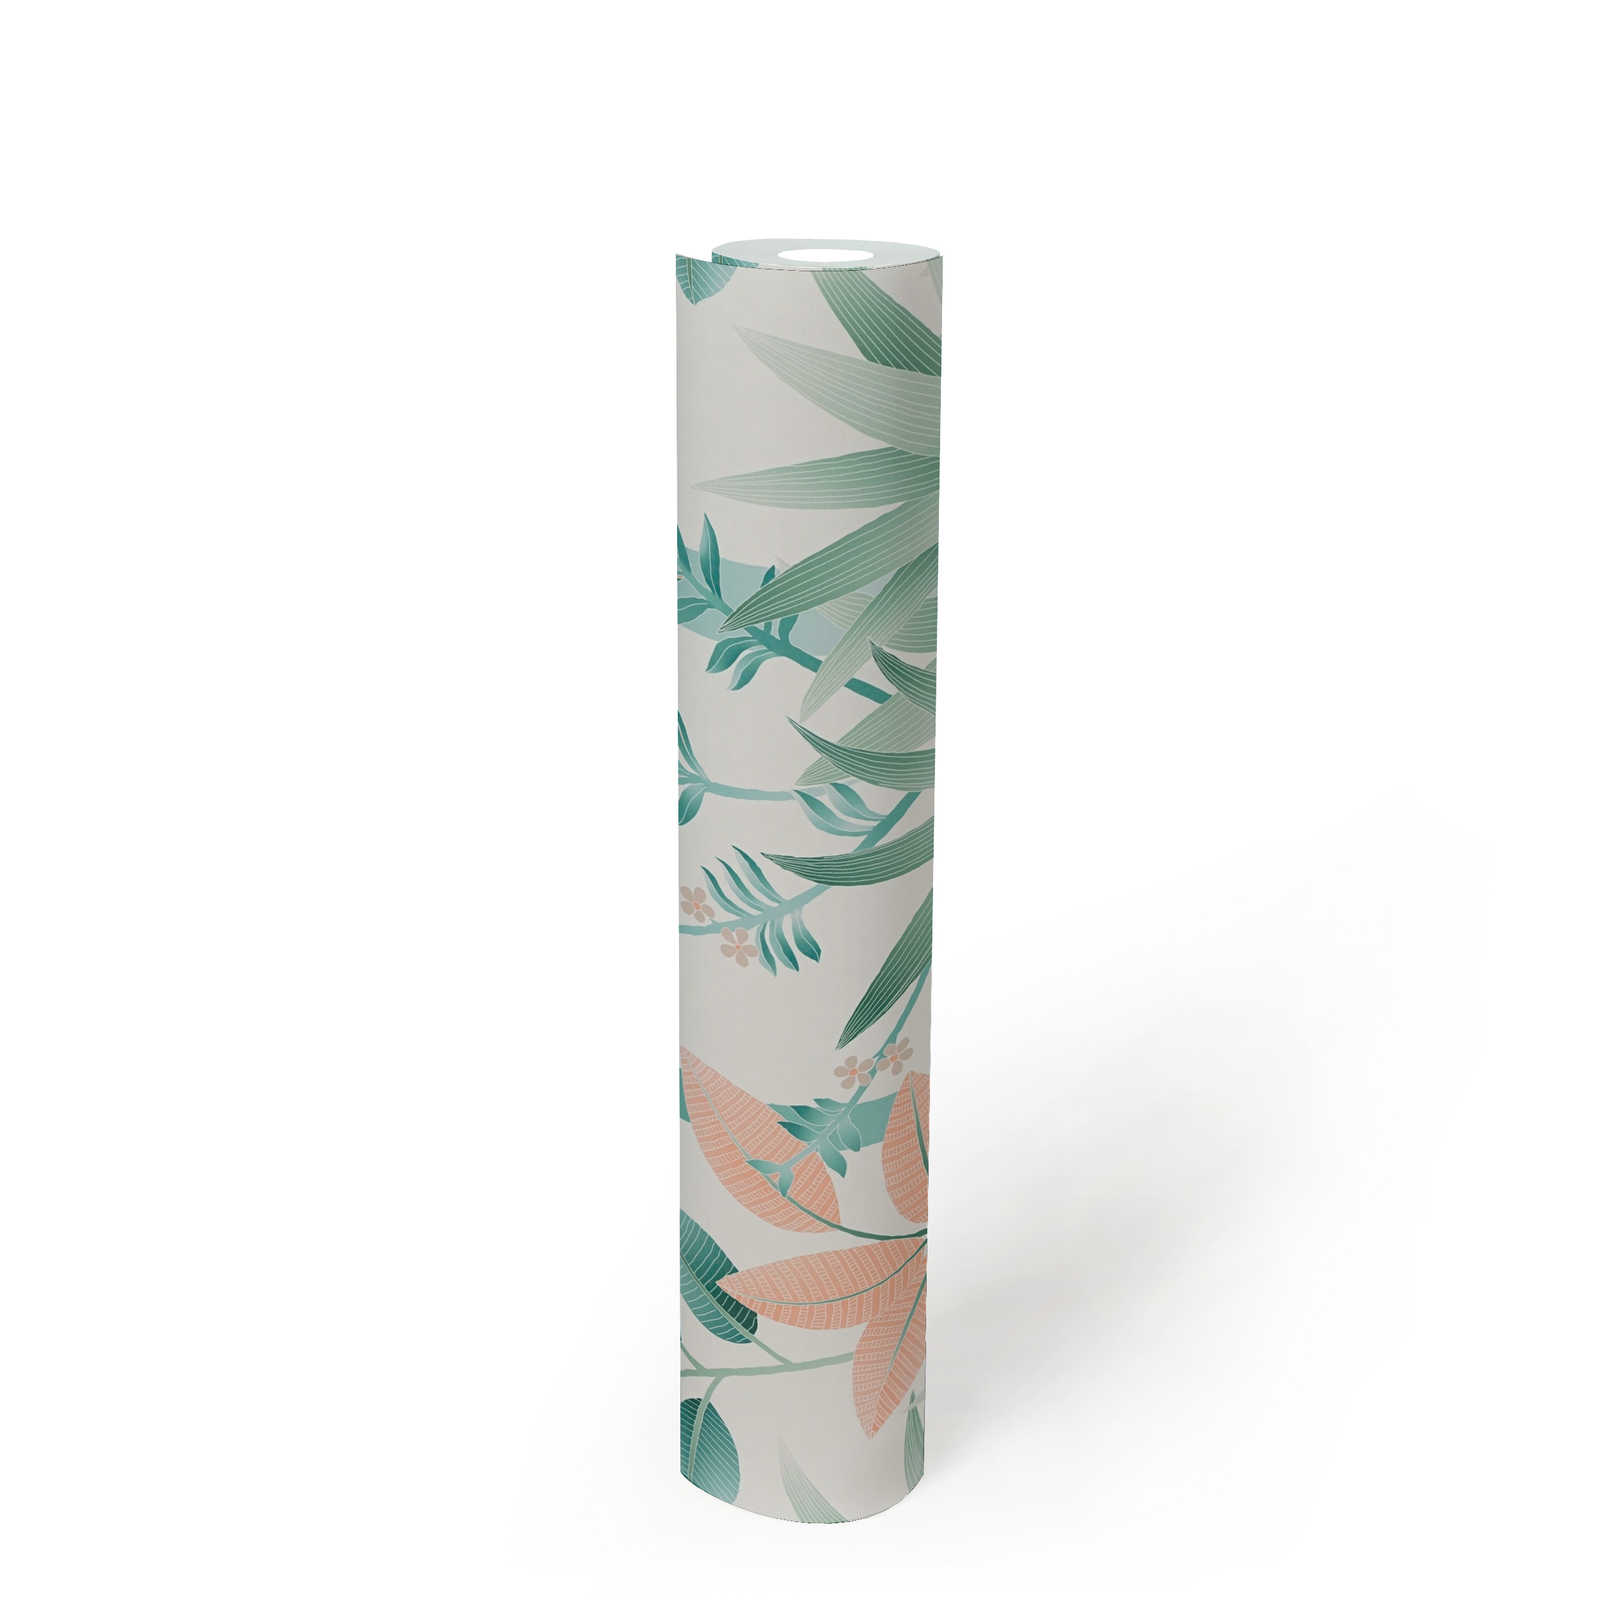             Vliestapete mit floralem Muster – Bunt, Grün, Weiß
        